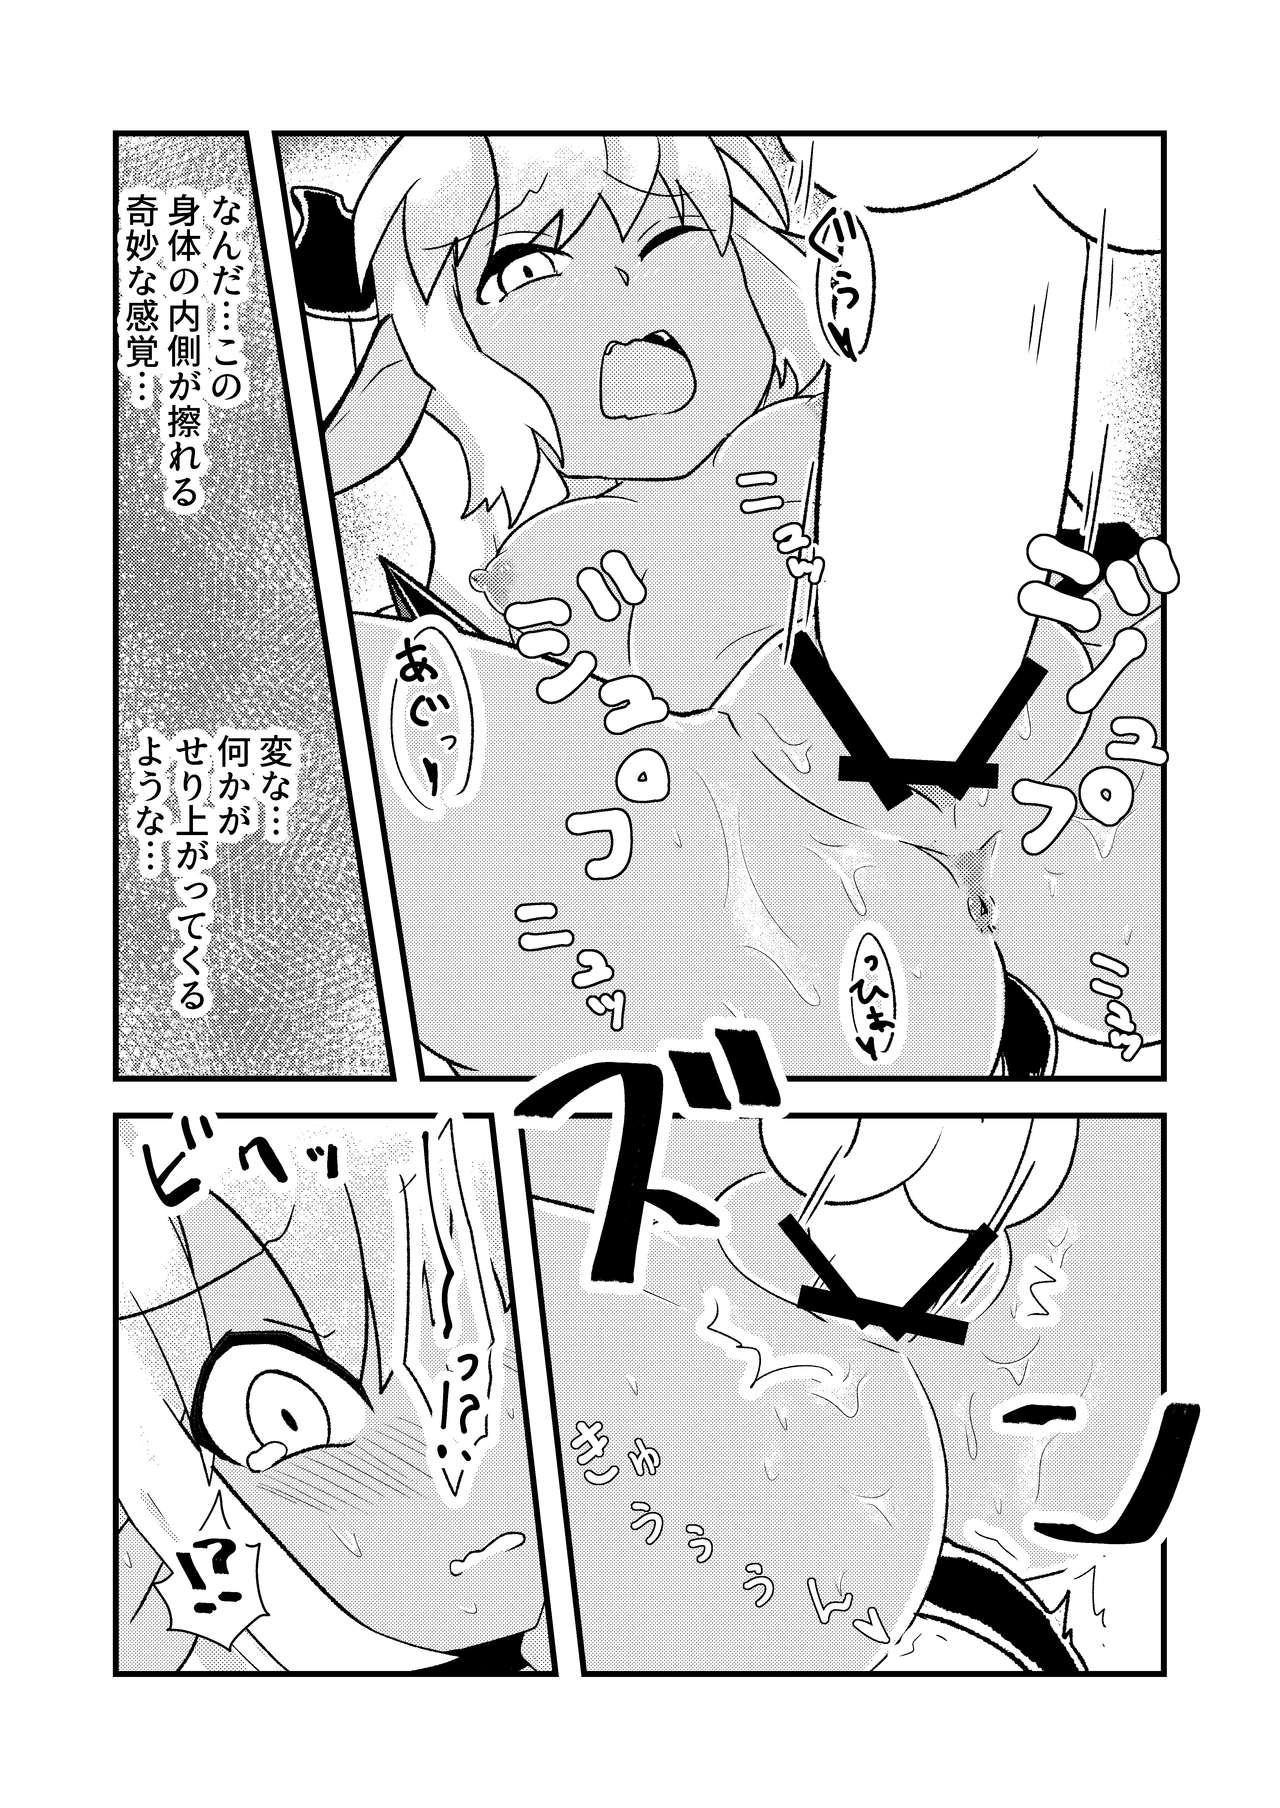 【ズンダリンダ】「お風呂」青肌の魔族がTSして弱体化する漫画②